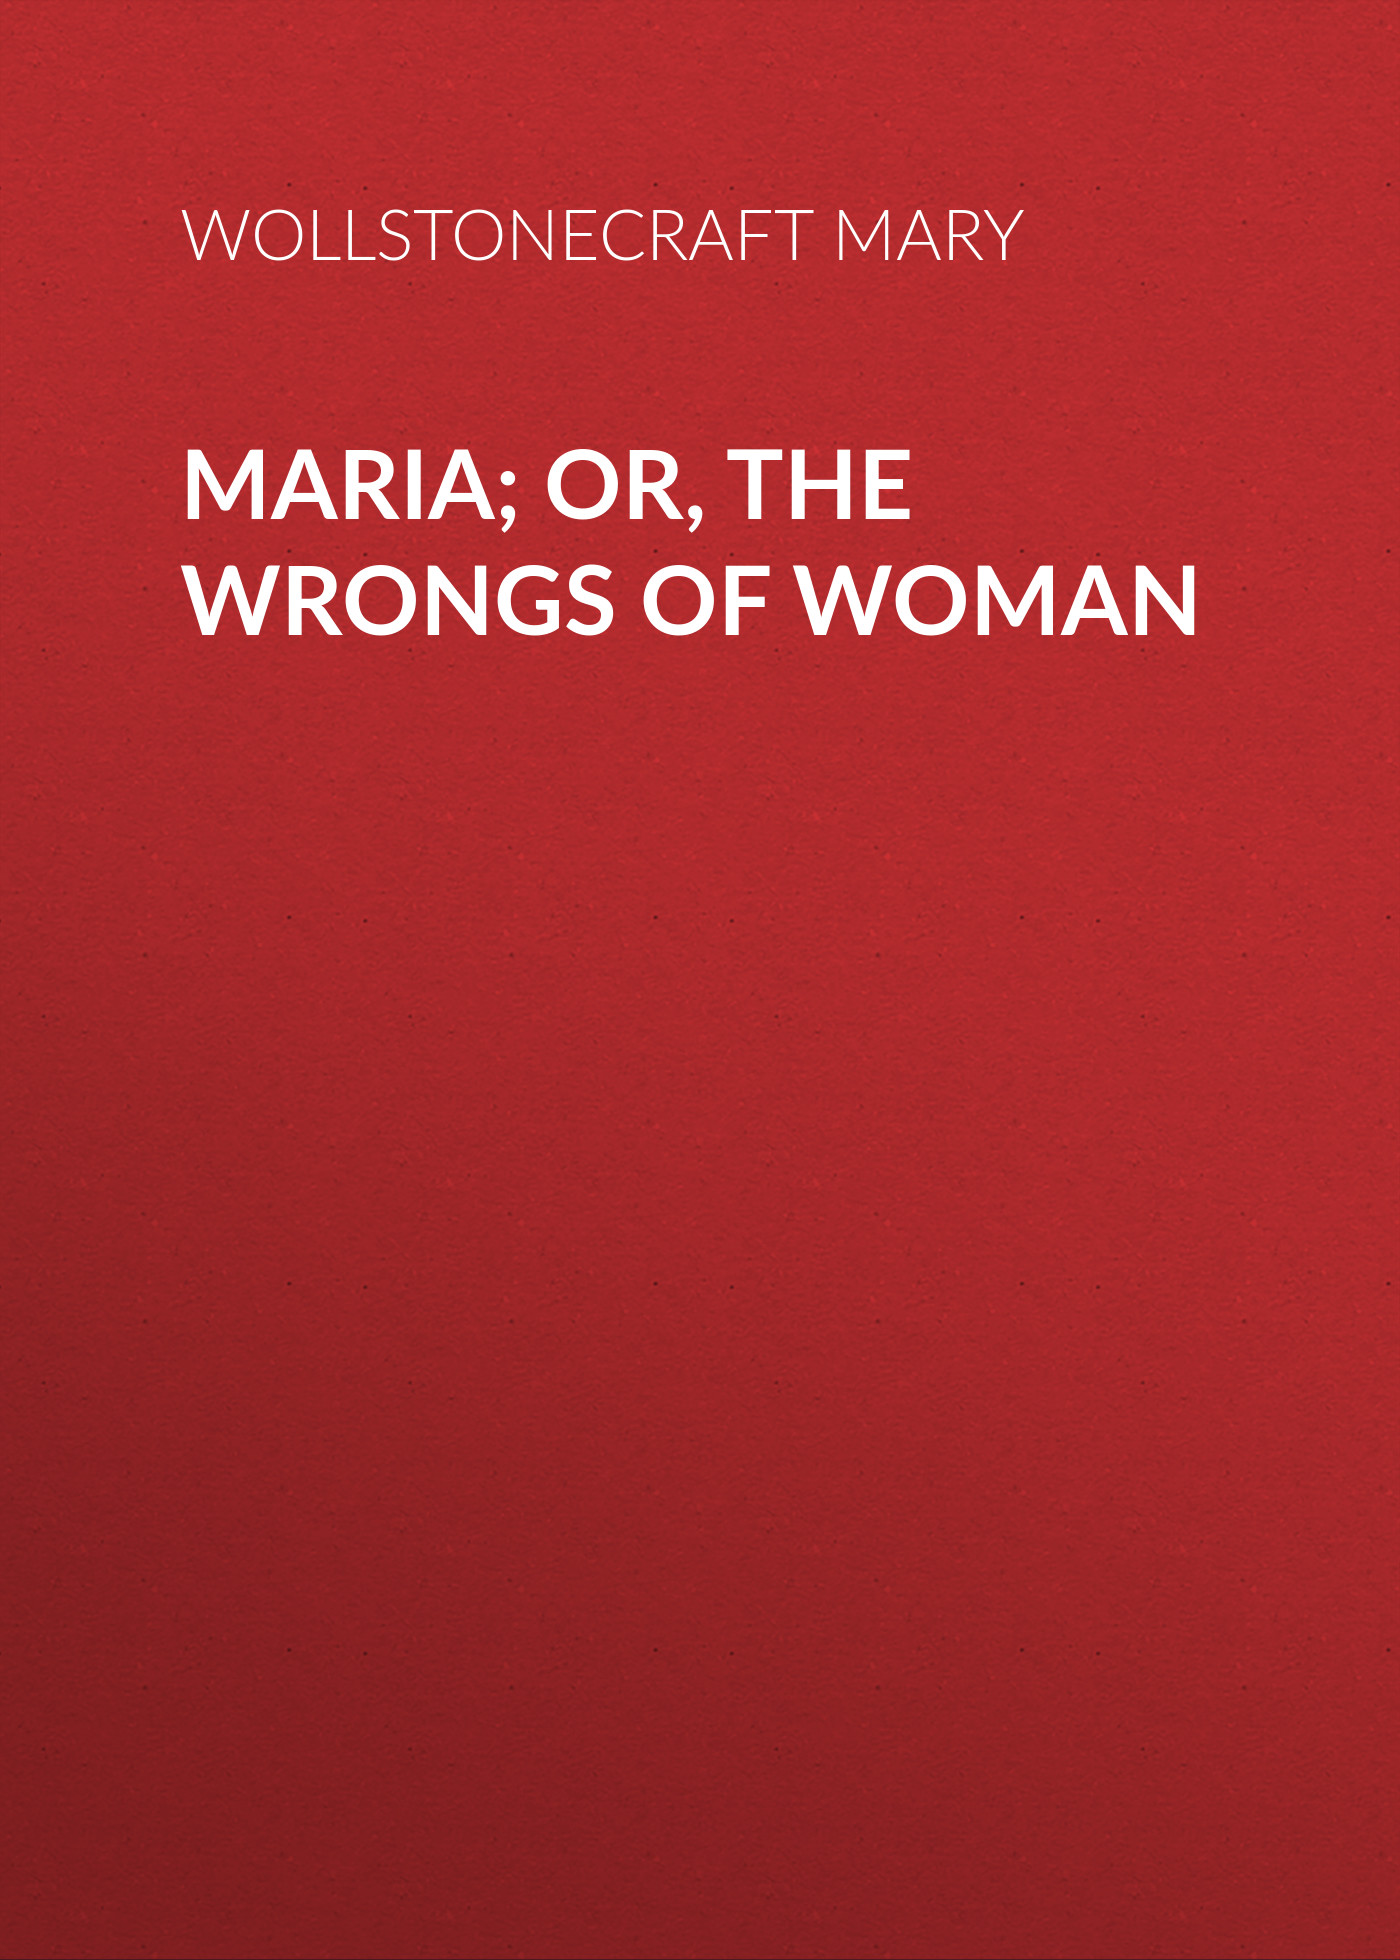 Книга Maria; Or, The Wrongs of Woman из серии , созданная Mary Wollstonecraft, может относится к жанру Биографии и Мемуары, Литература 18 века, Зарубежная старинная литература. Стоимость электронной книги Maria; Or, The Wrongs of Woman с идентификатором 34837950 составляет 0 руб.